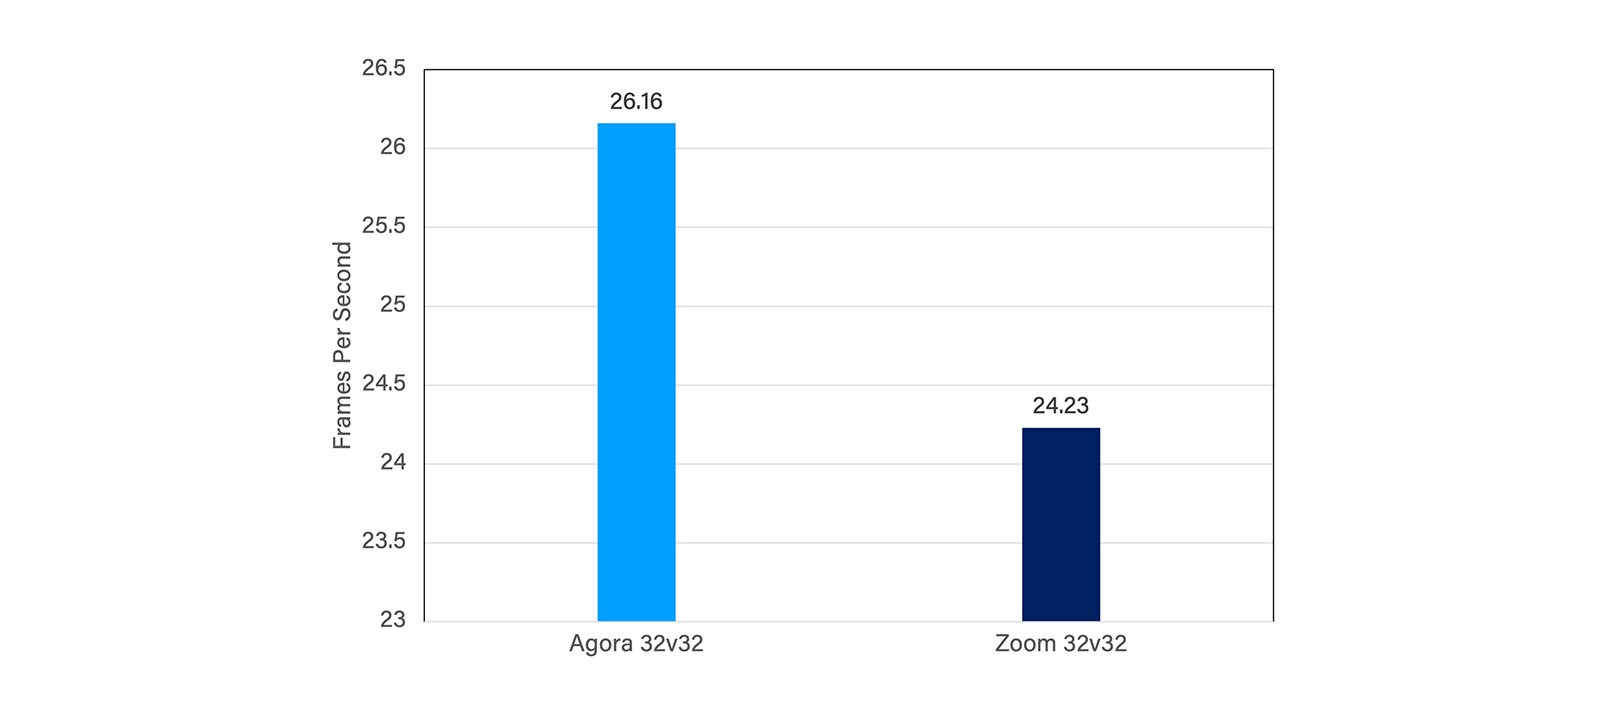 図1: 通常のネットワーク状態におけるAgoraとZoomのFPSの比較